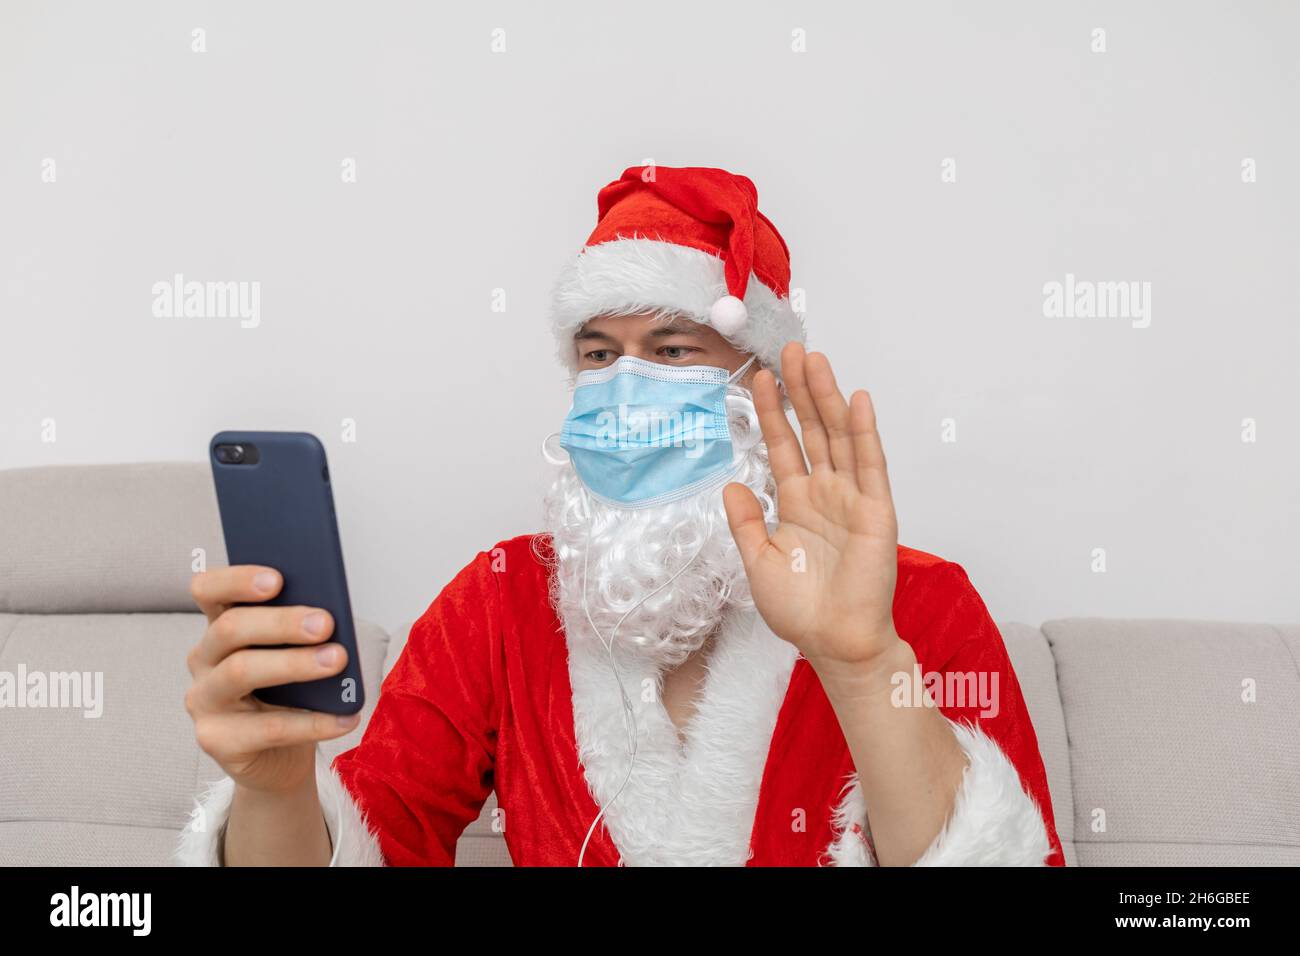 Als Weihnachtsmann gekleidet, der über eine Videokonferenz spricht Stockfoto